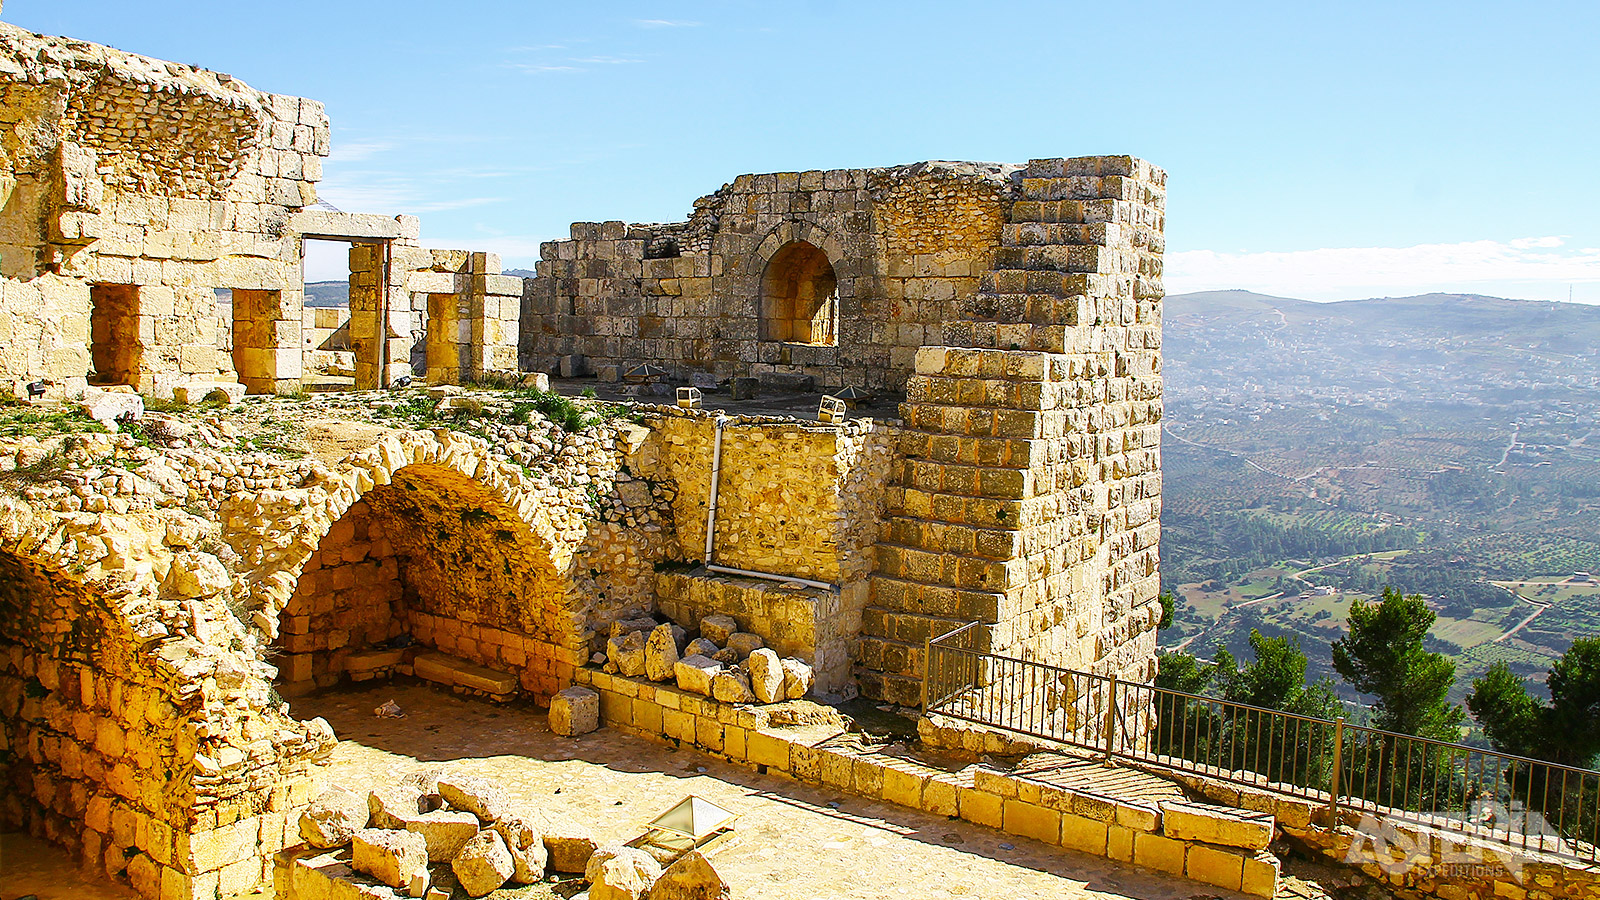 Het fort van Ajloun is het enige islamitische kasteel in Jordanië